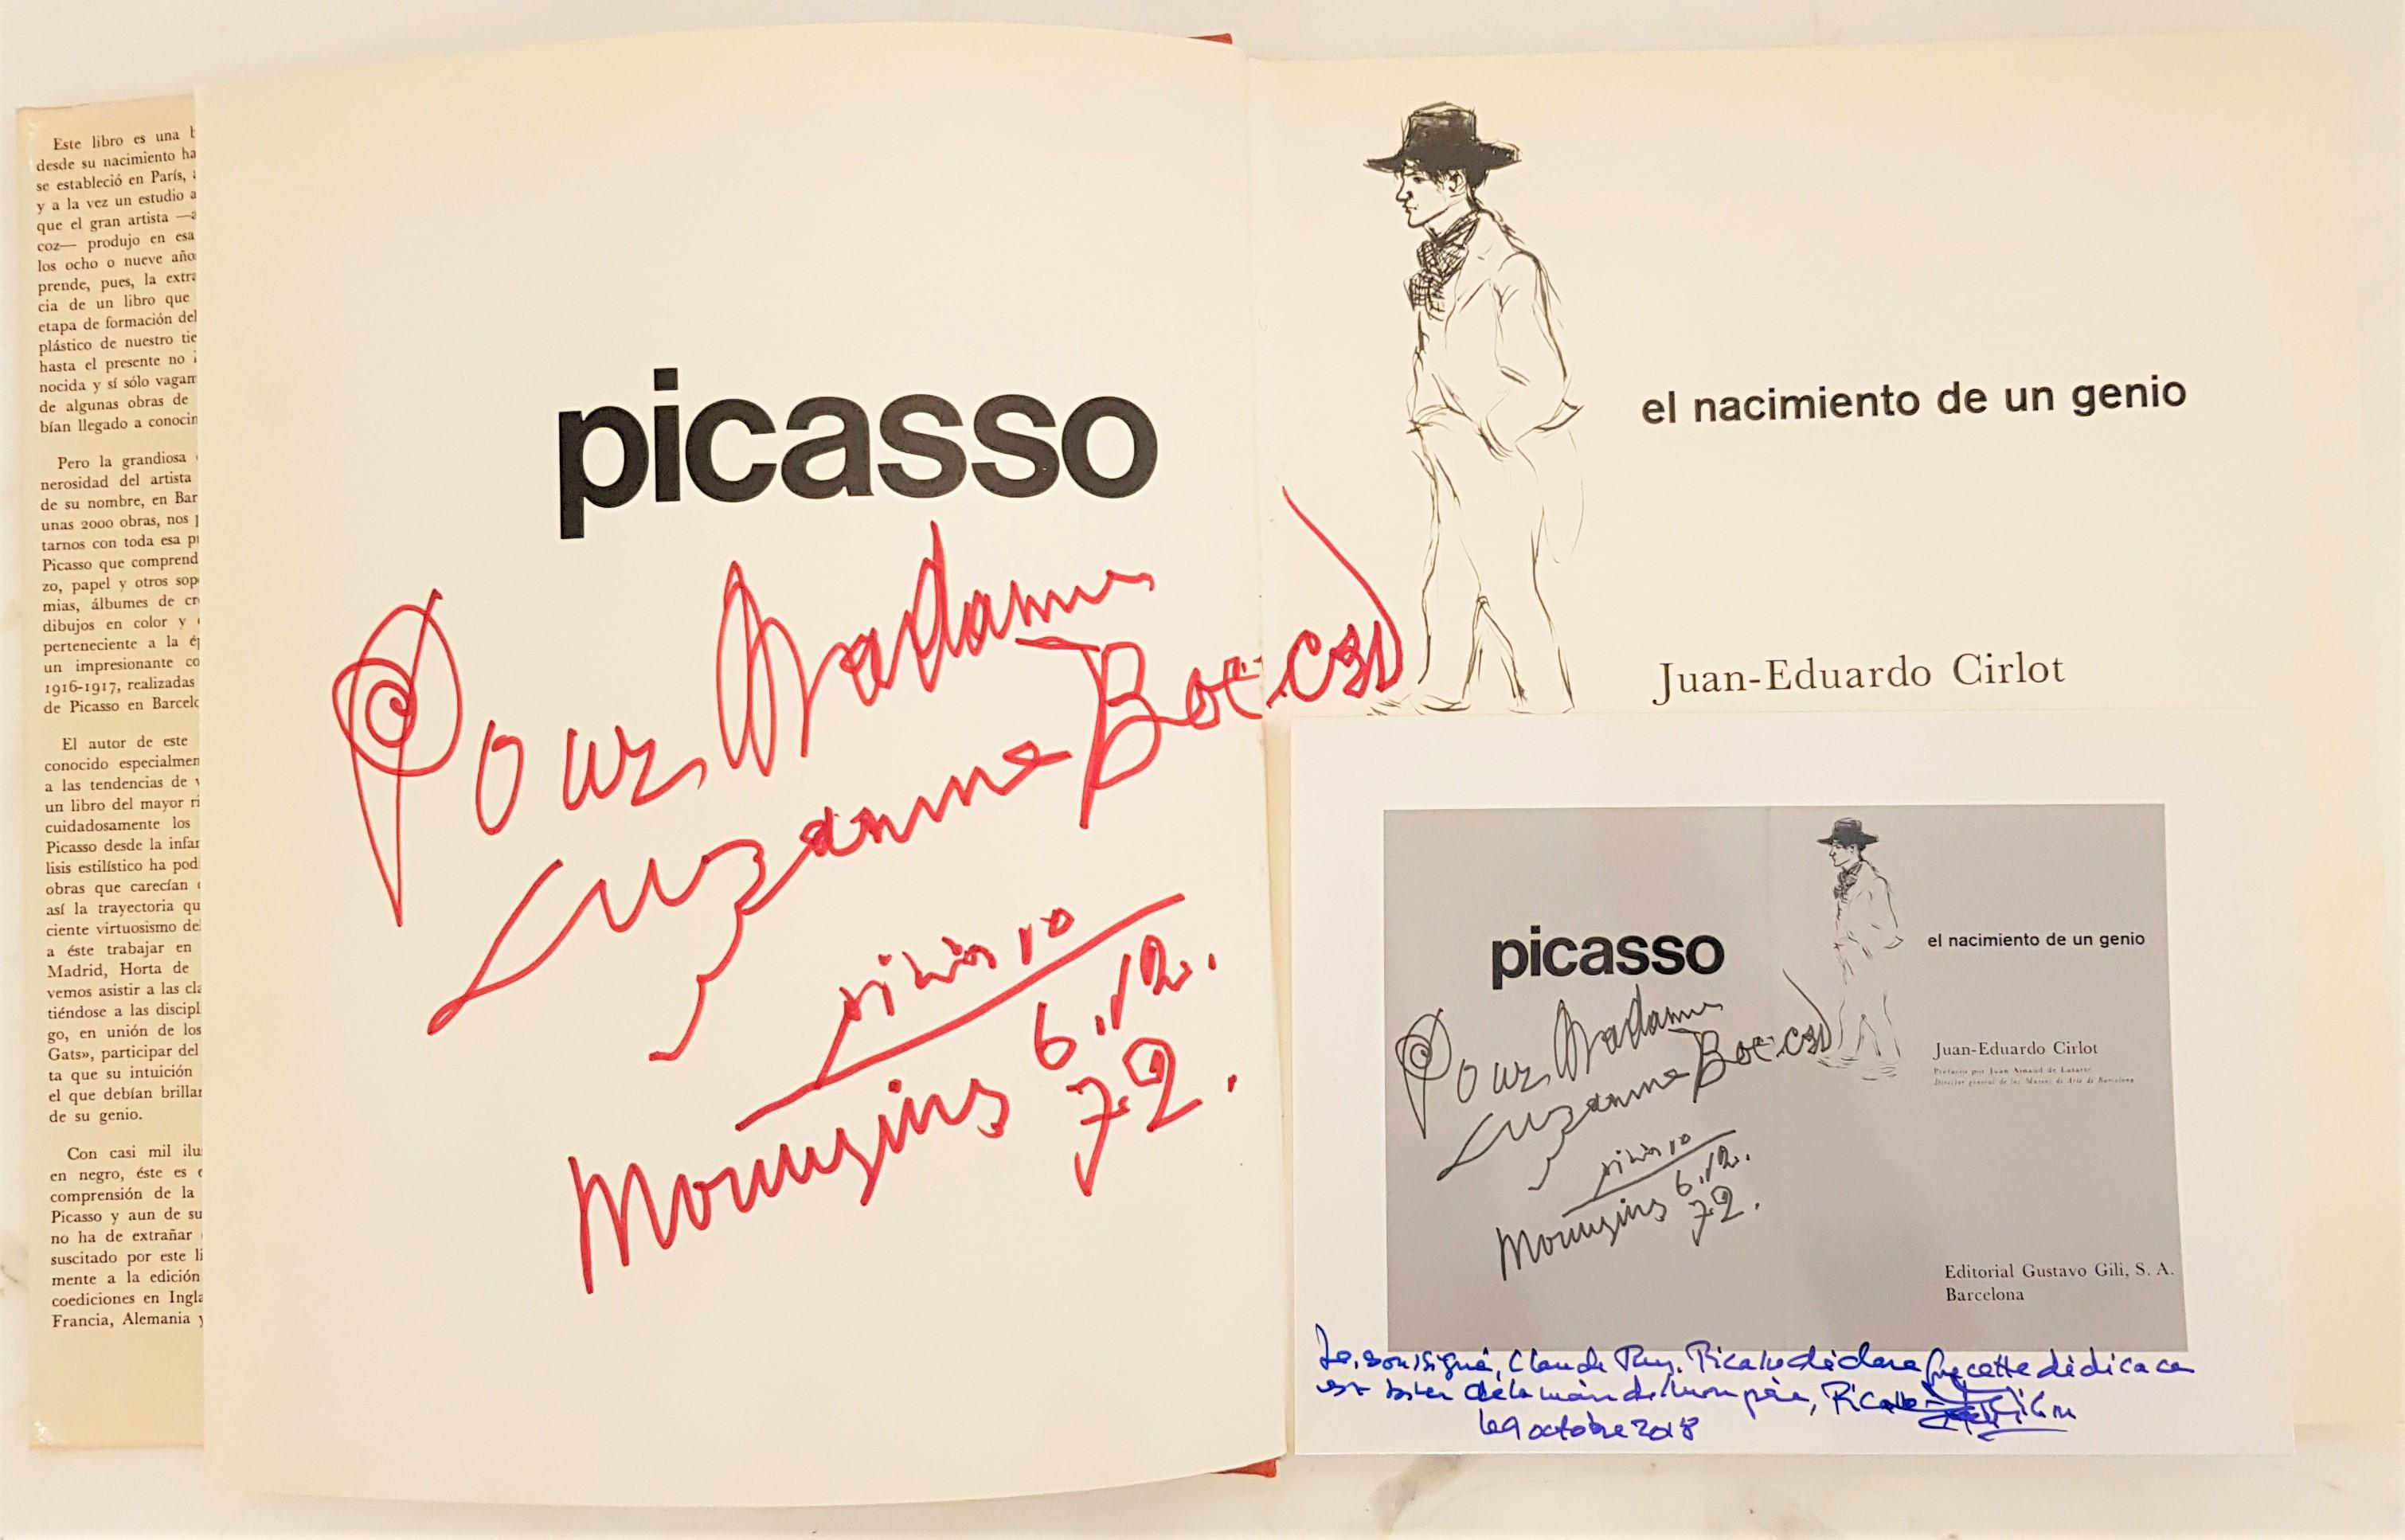 Inscribed and Signed Picasso Book "Picasso, el nacimiento de un genio" 1972 - Print by Pablo Picasso